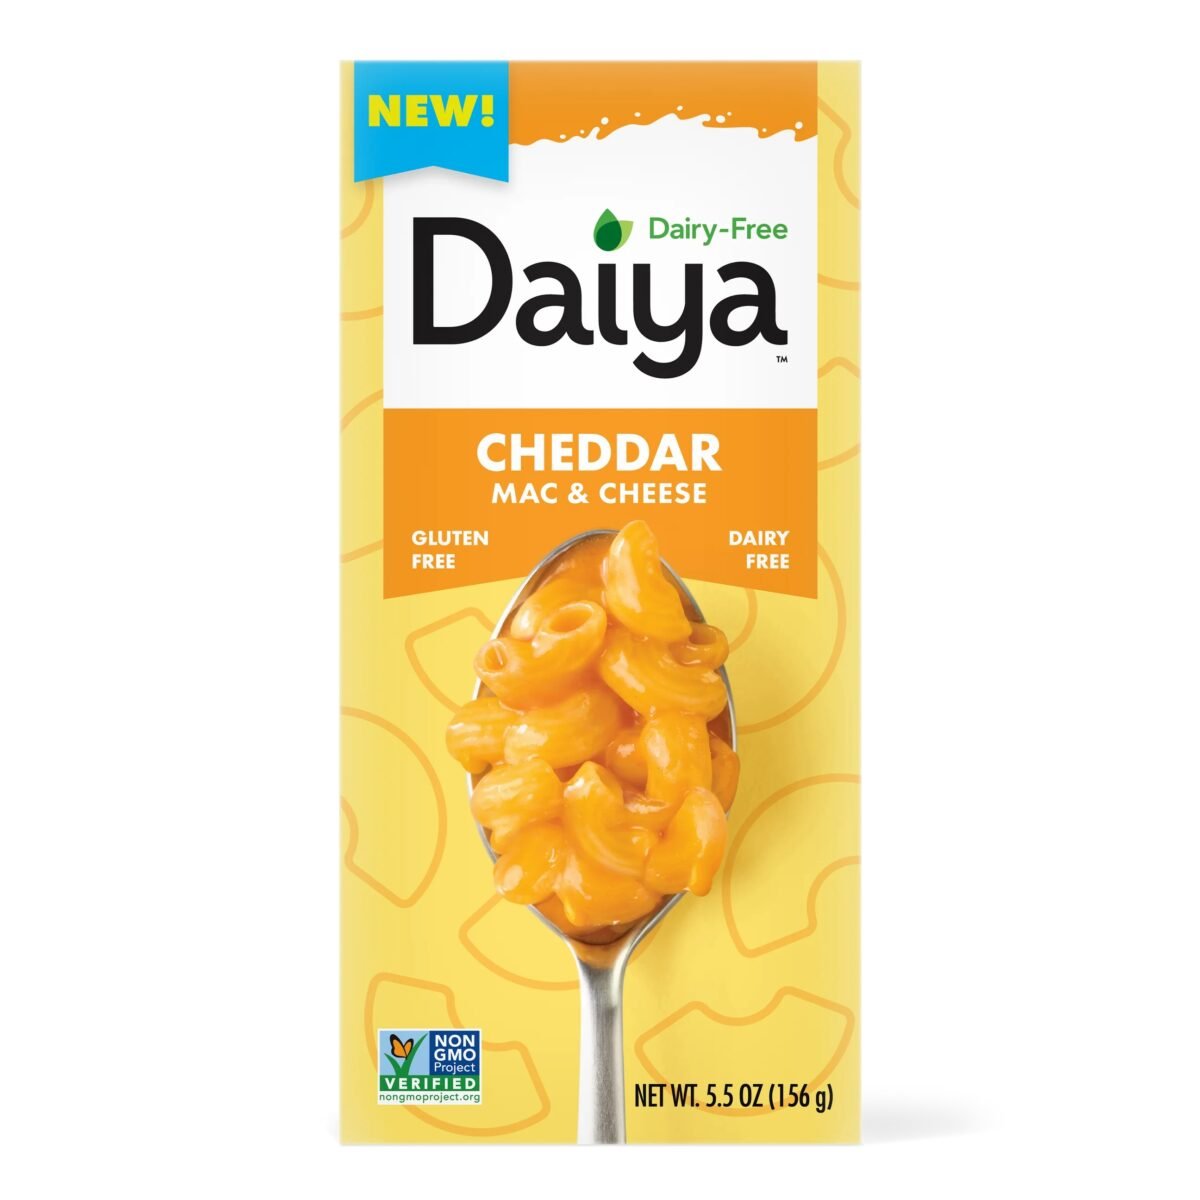 A dairy-free mac and cheese box from Daiya